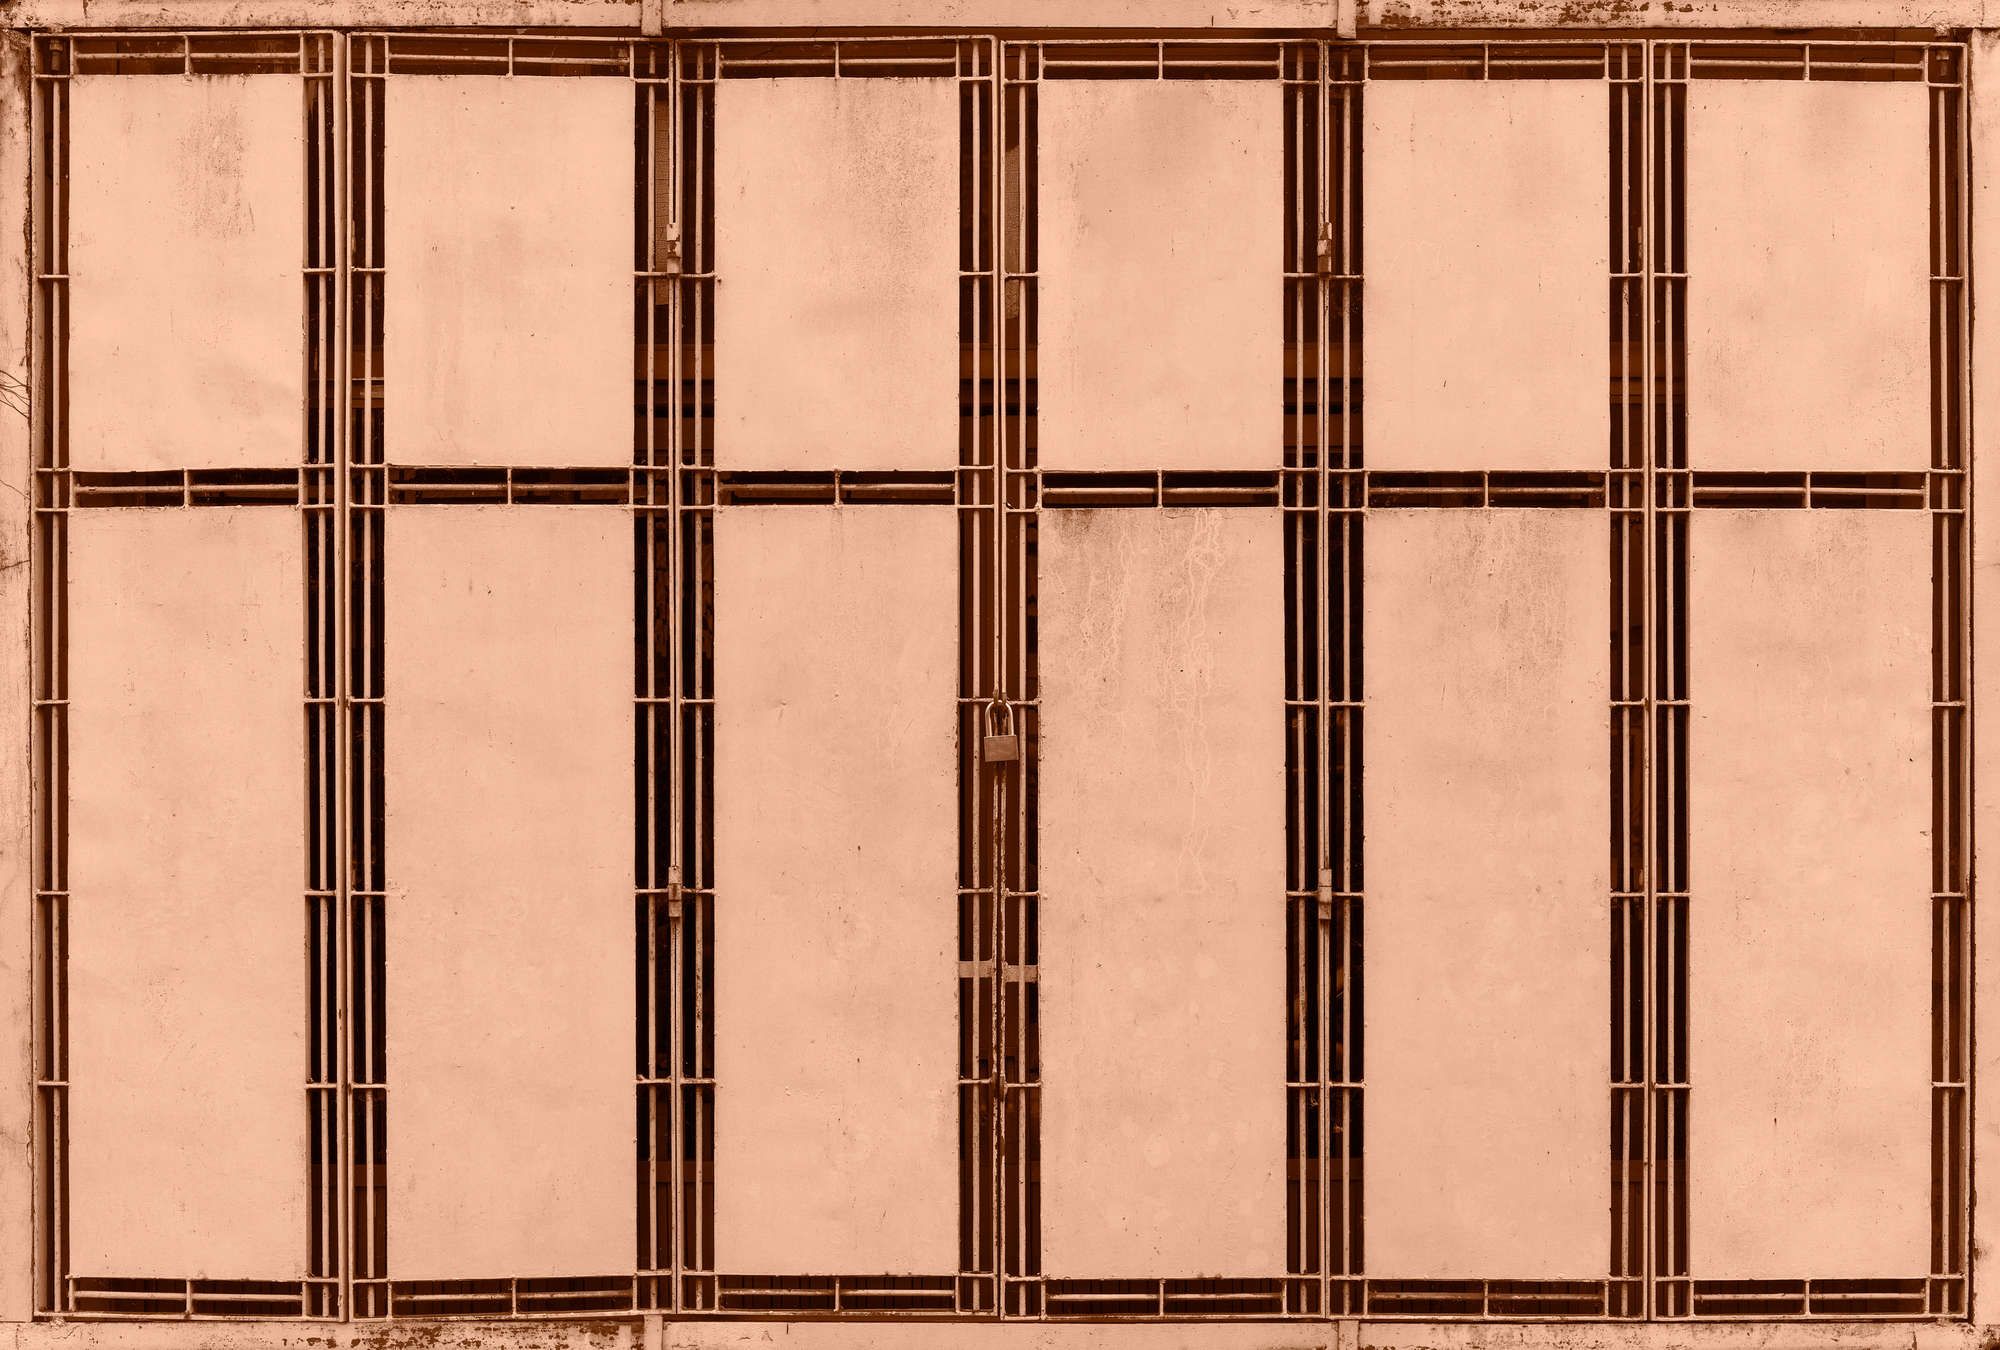             papier peint en papier panoramique »jaipur« - détail d'une clôture métallique saumon - intissé légèrement structuré
        